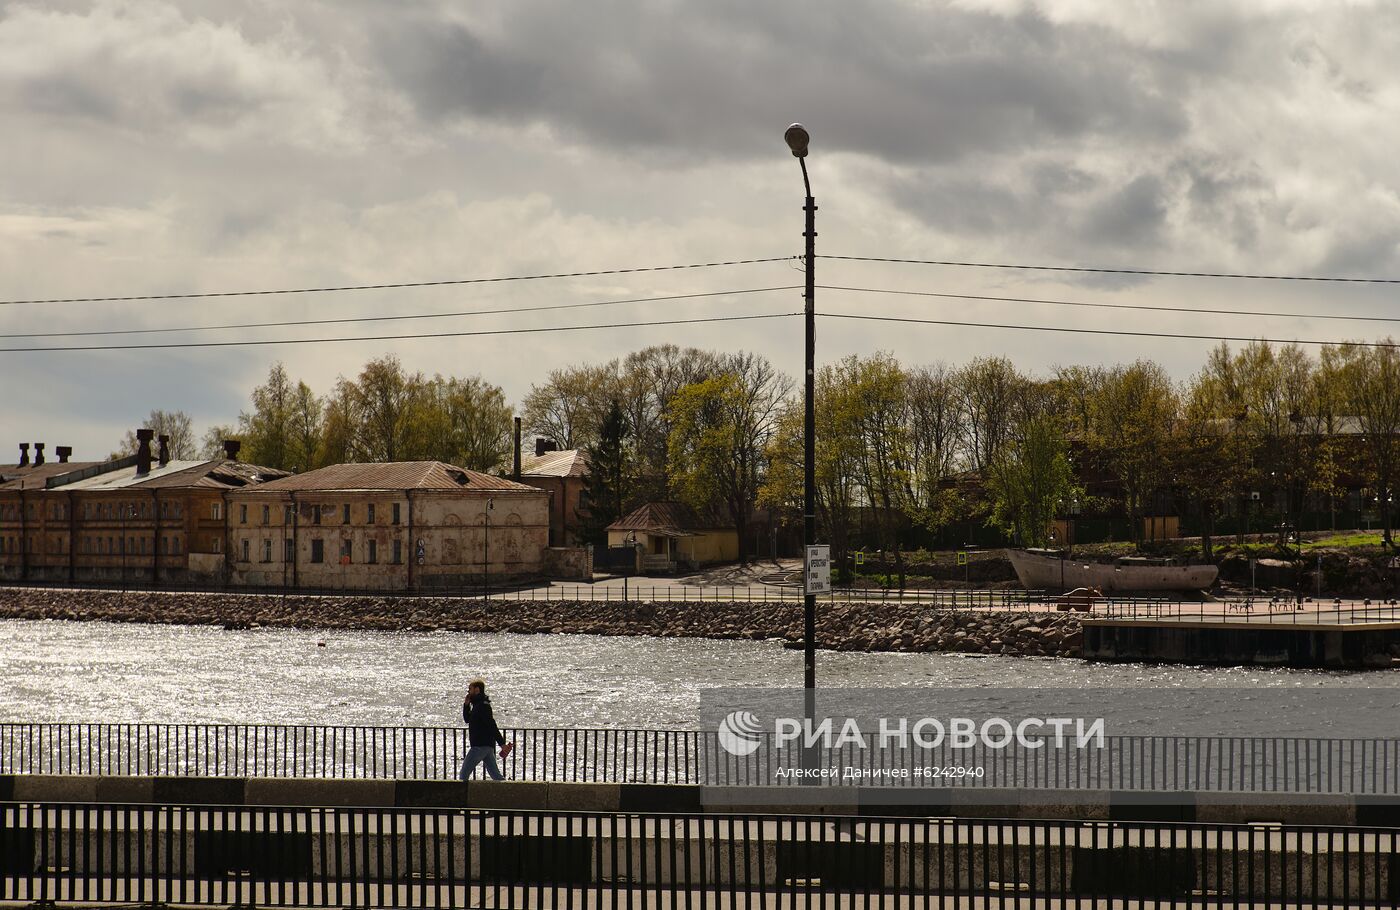 Ослабление карантинного режима в городах России